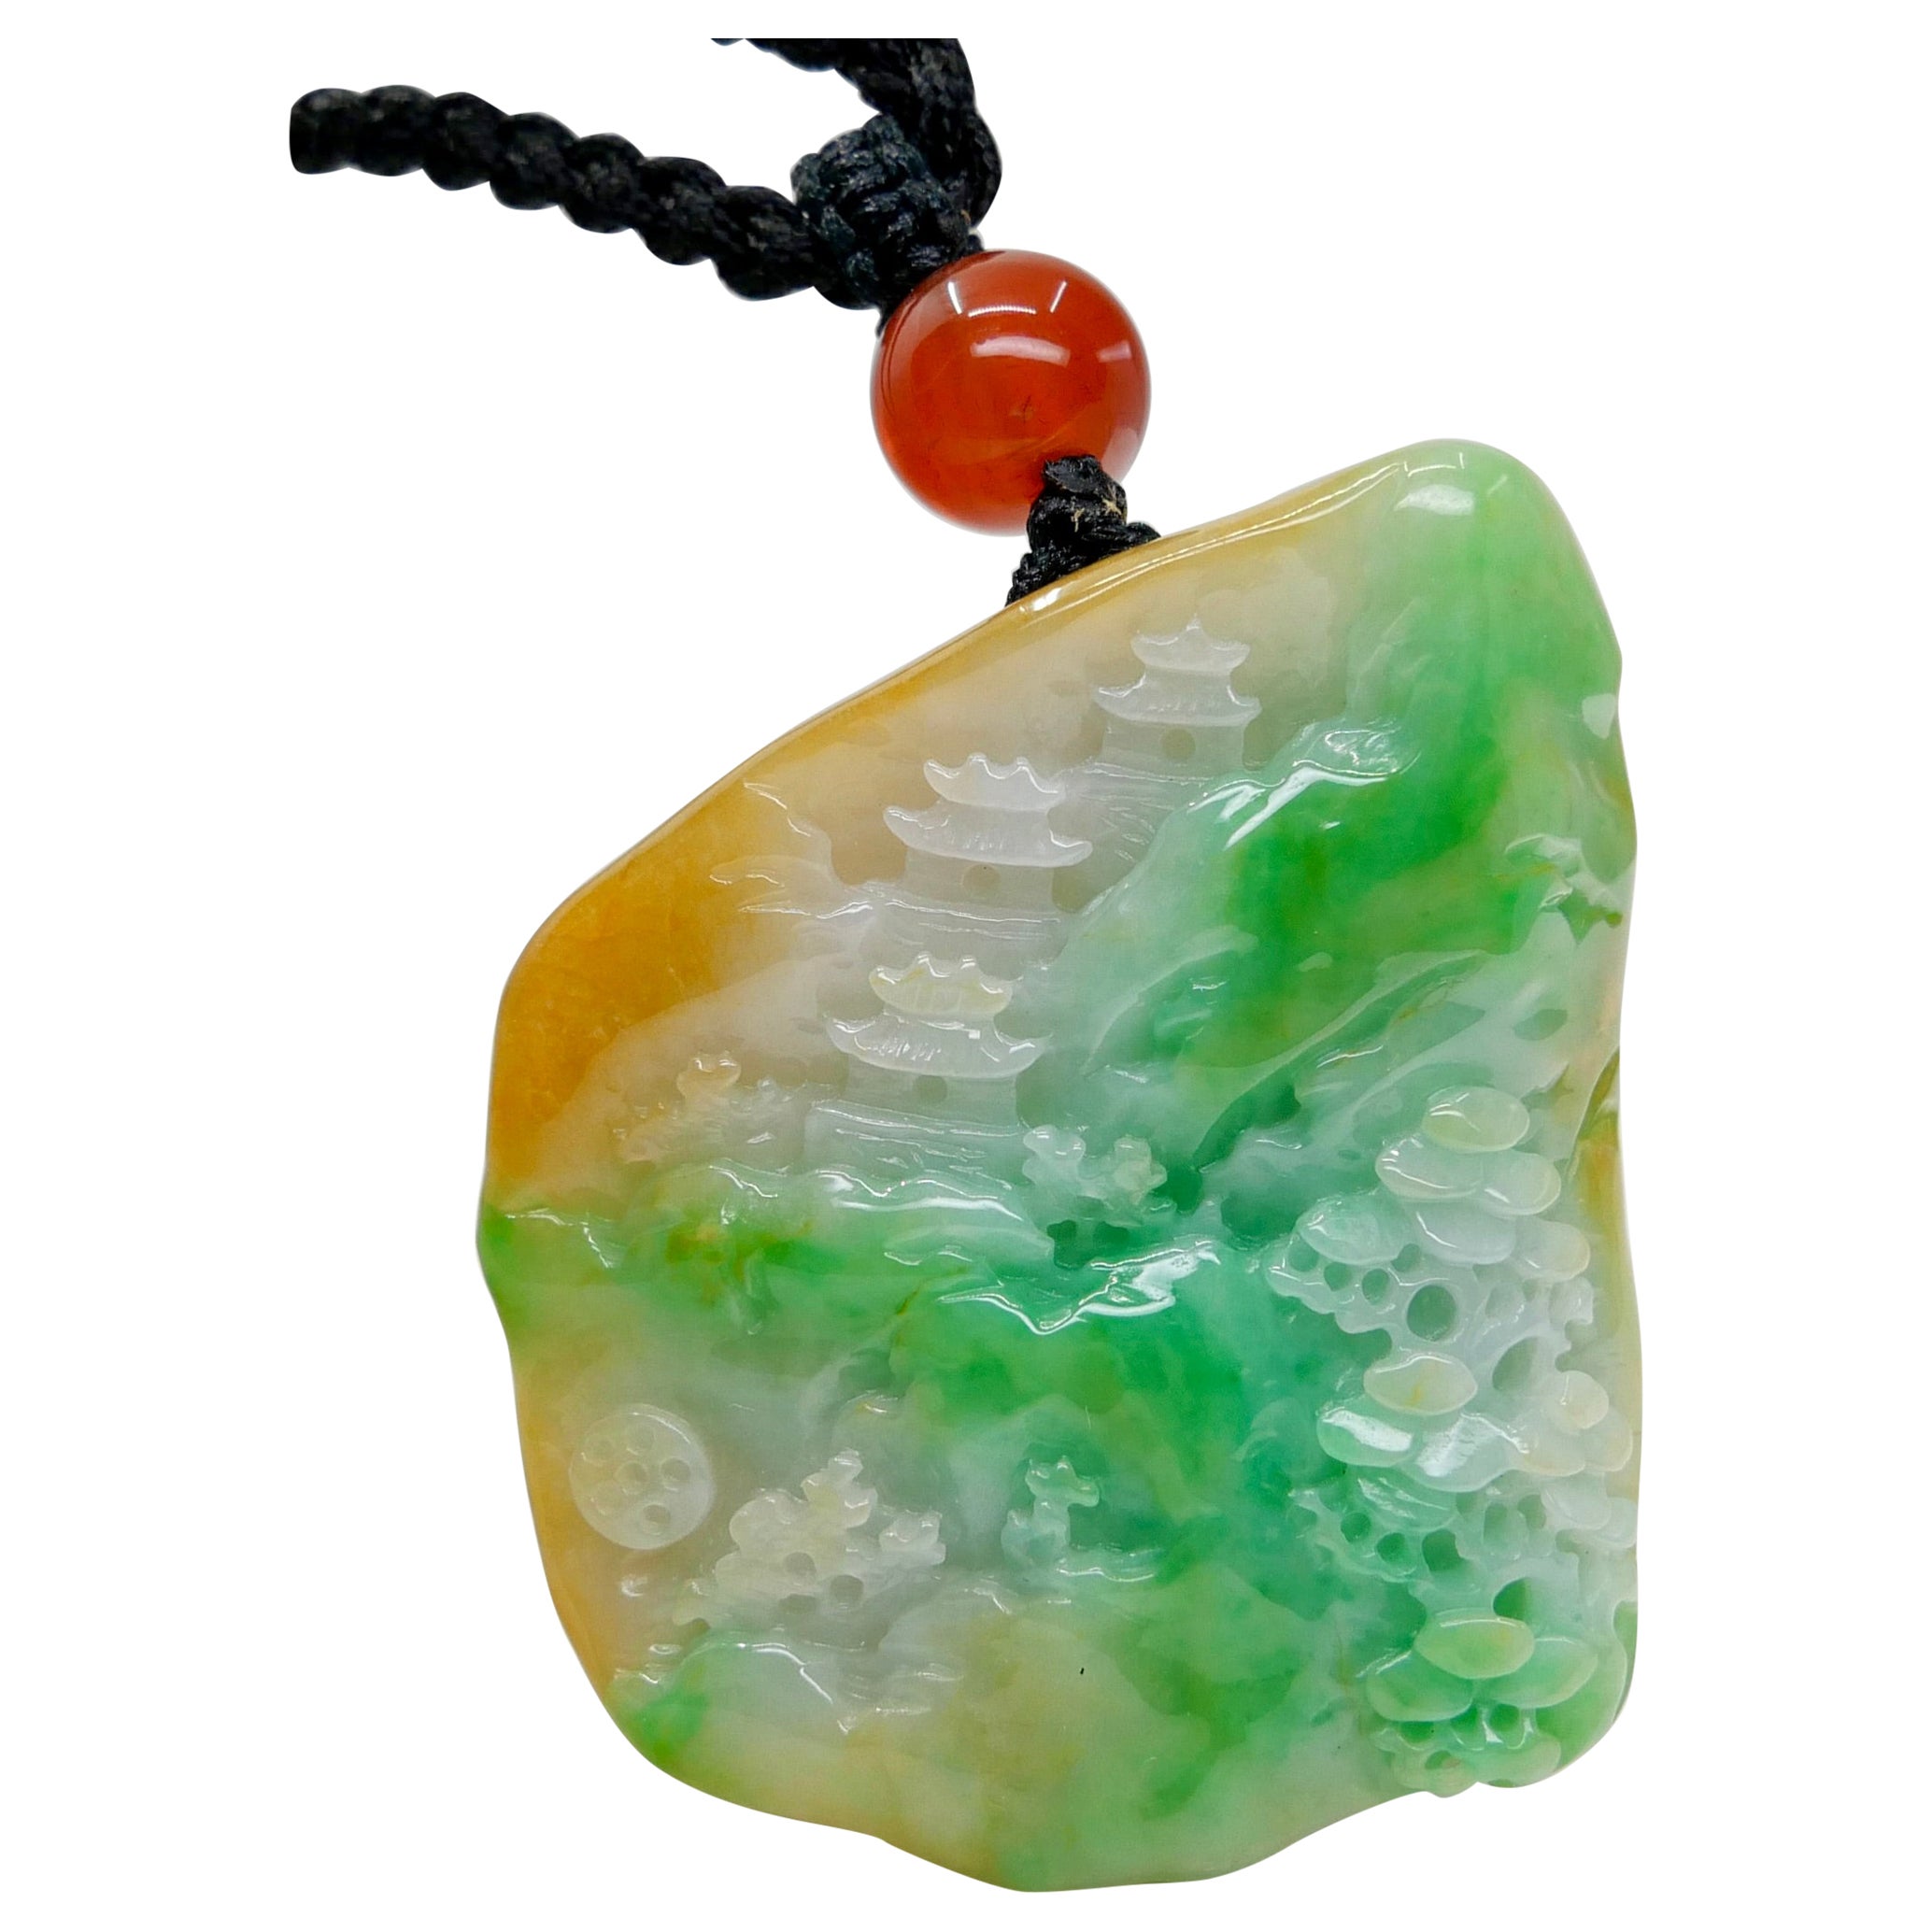 Collier à pendentif en jade naturel multicolore et agate certifié. Sculpture exquise.